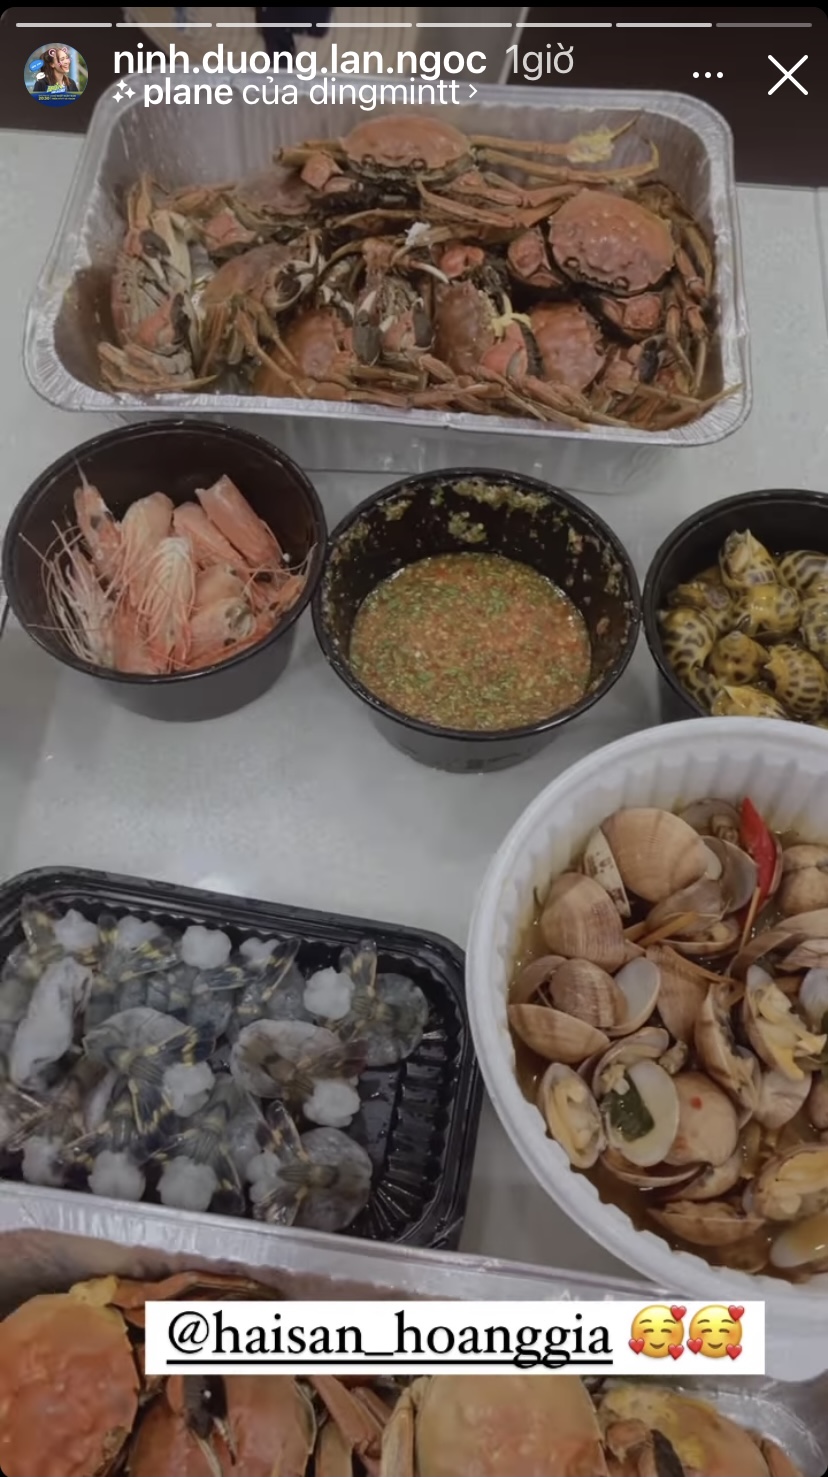 Bàn ăn nhà Ninh Dương Lan Ngọc hôm nay vô cùng thịnh soạn với các món hải sản như tôm, cua, ốc hương... ngon ứa nước miếng.